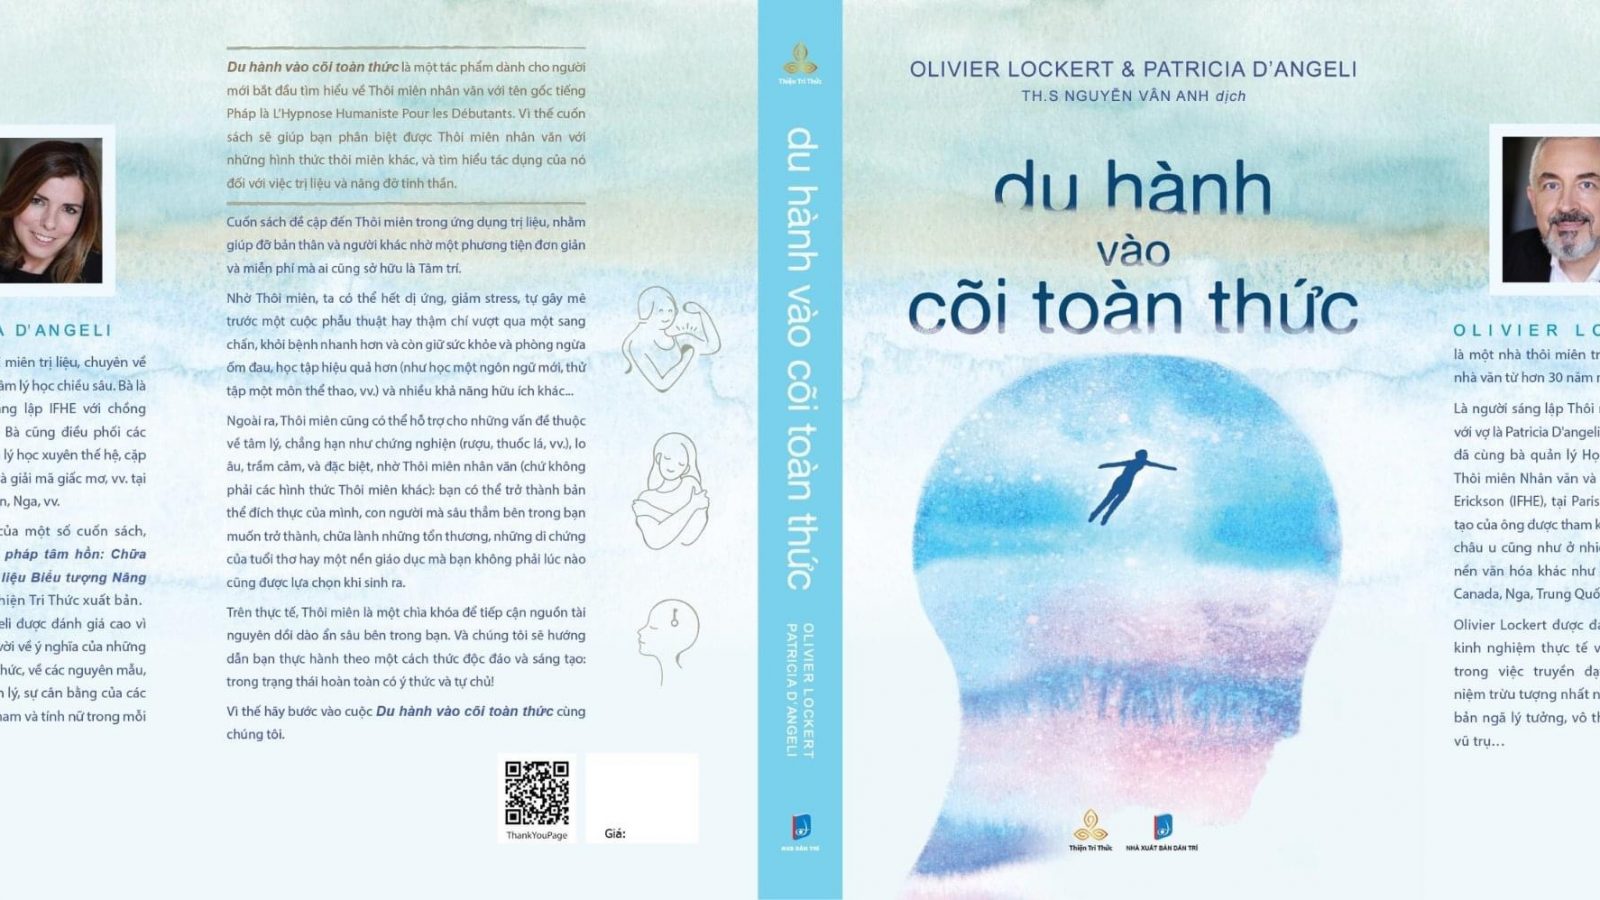 Du hành vào cõi Toàn thức – Cuốn sách về thôi miên nhân văn đầu tiên tại Việt Nam